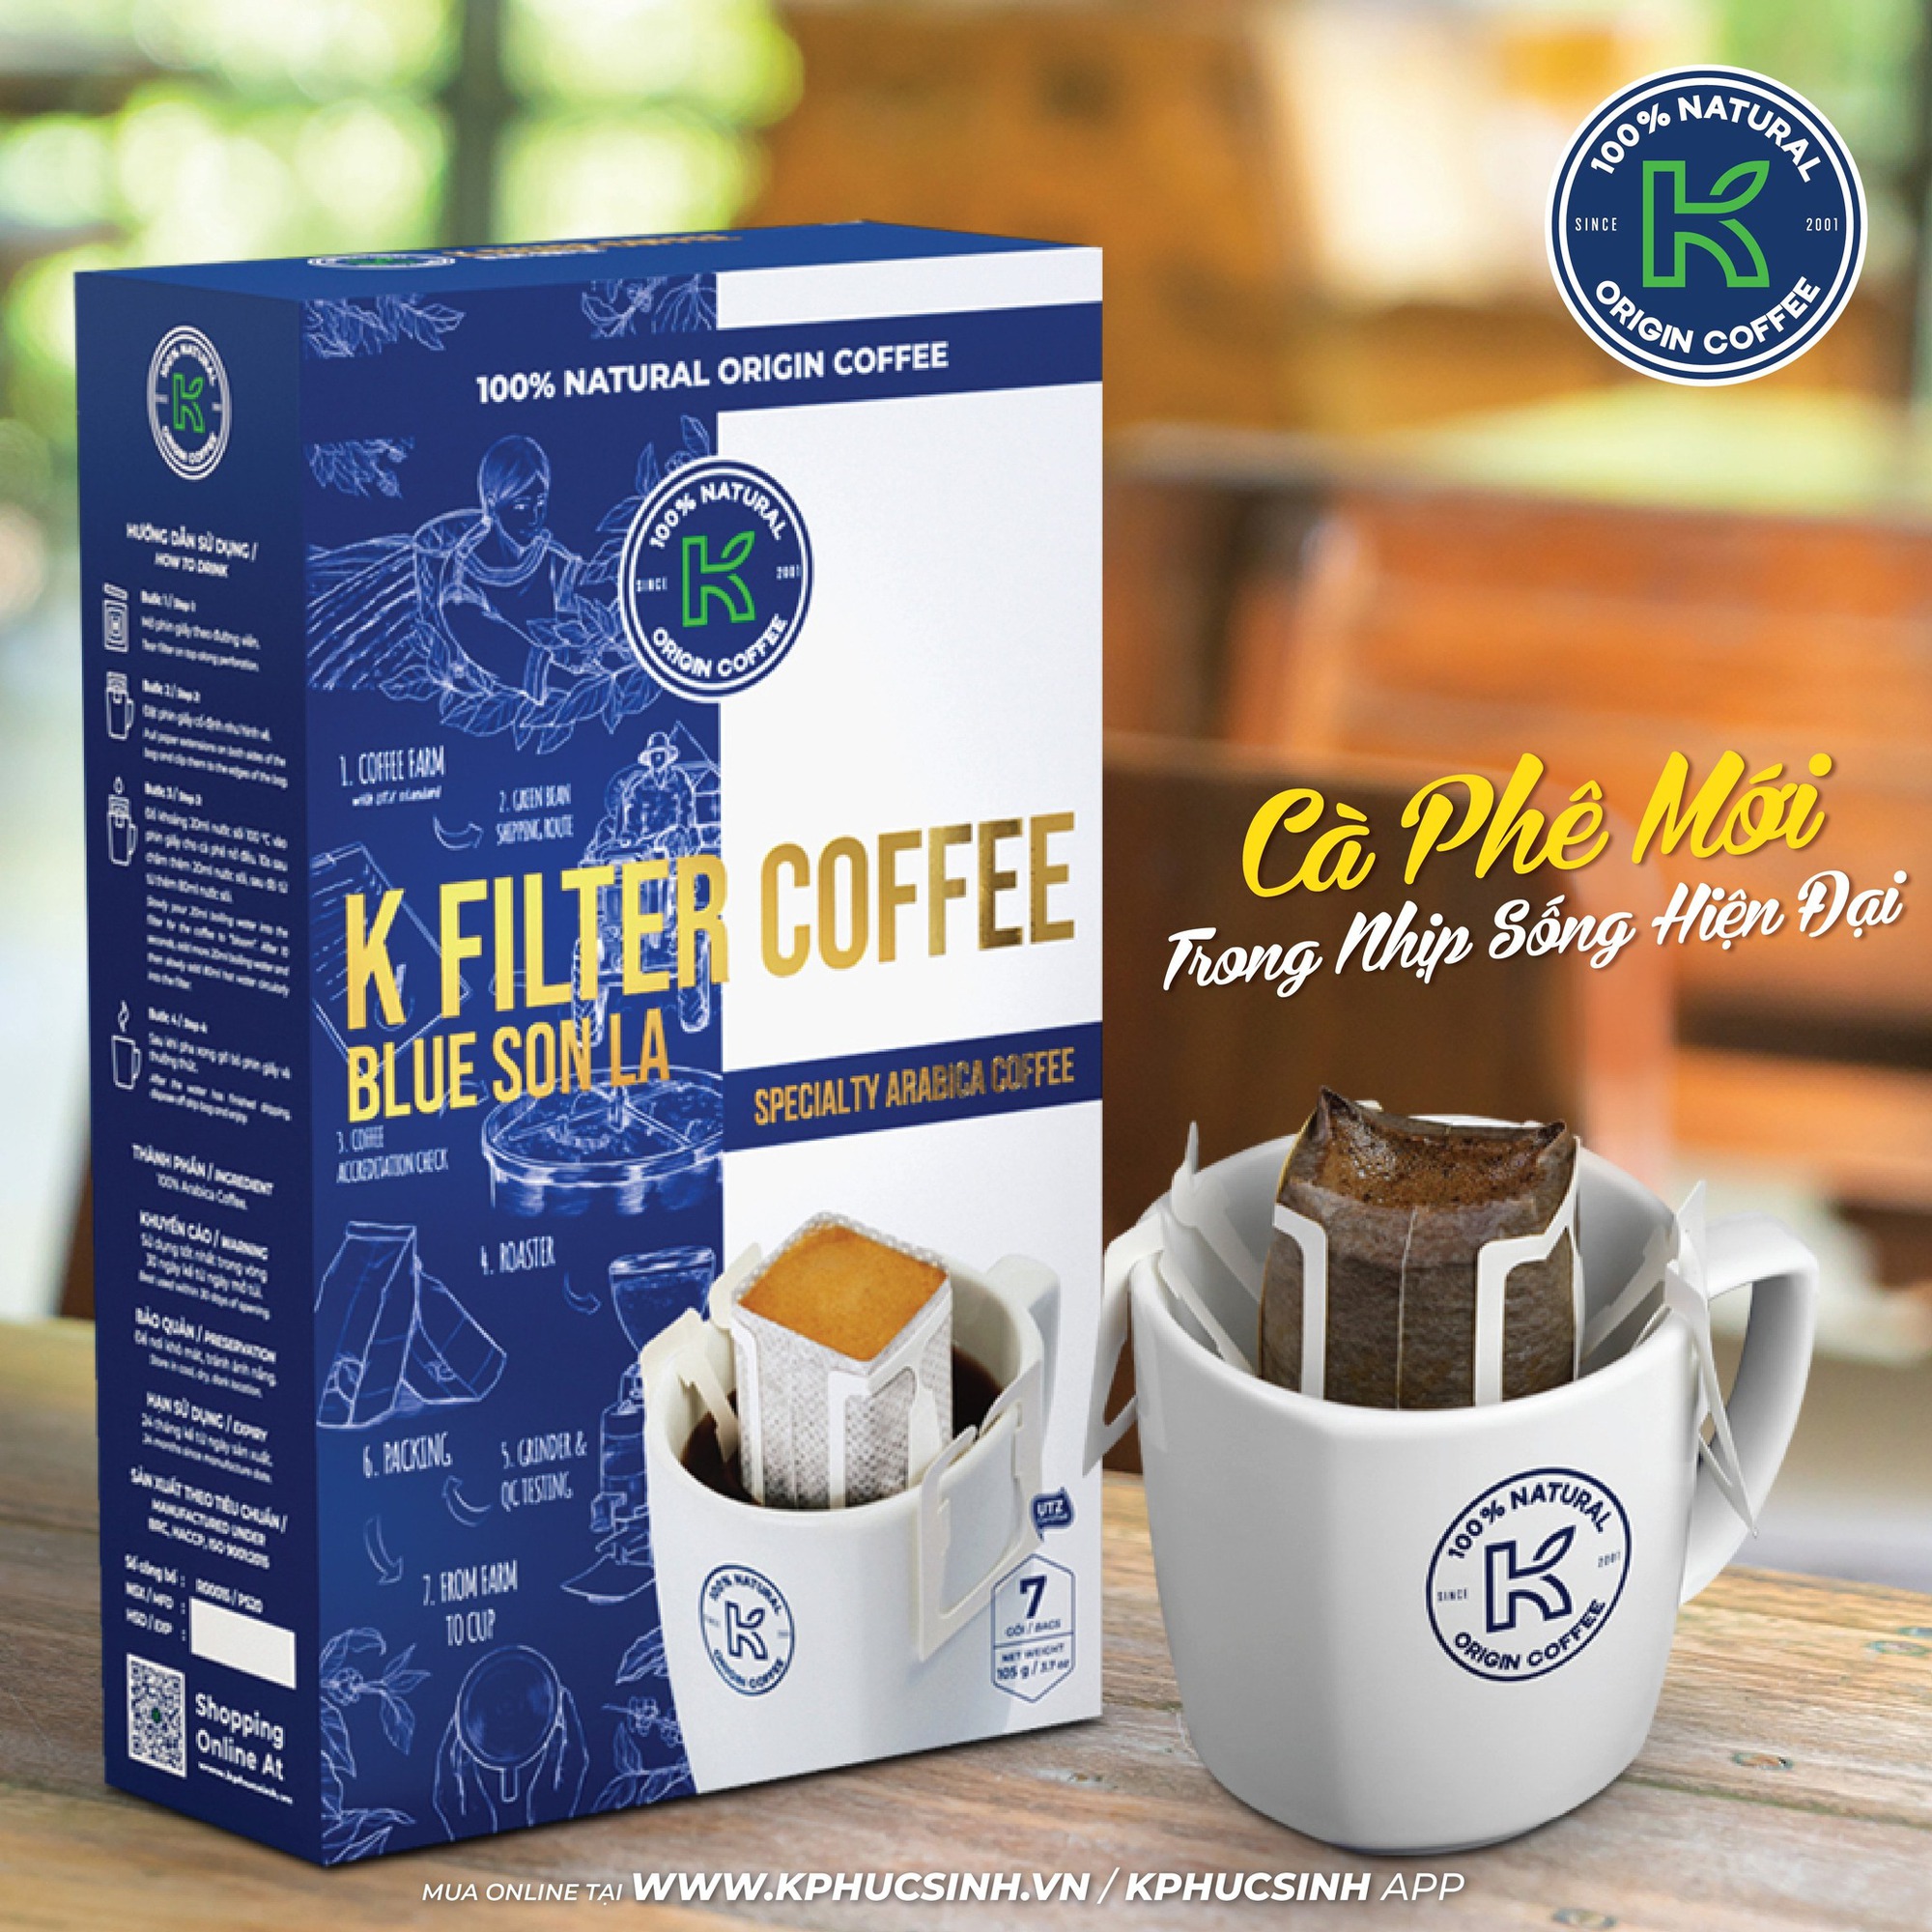 Ông chủ chuỗi K COFFEE: Chỉ bán cà phê nguyên chất - Ảnh 5.